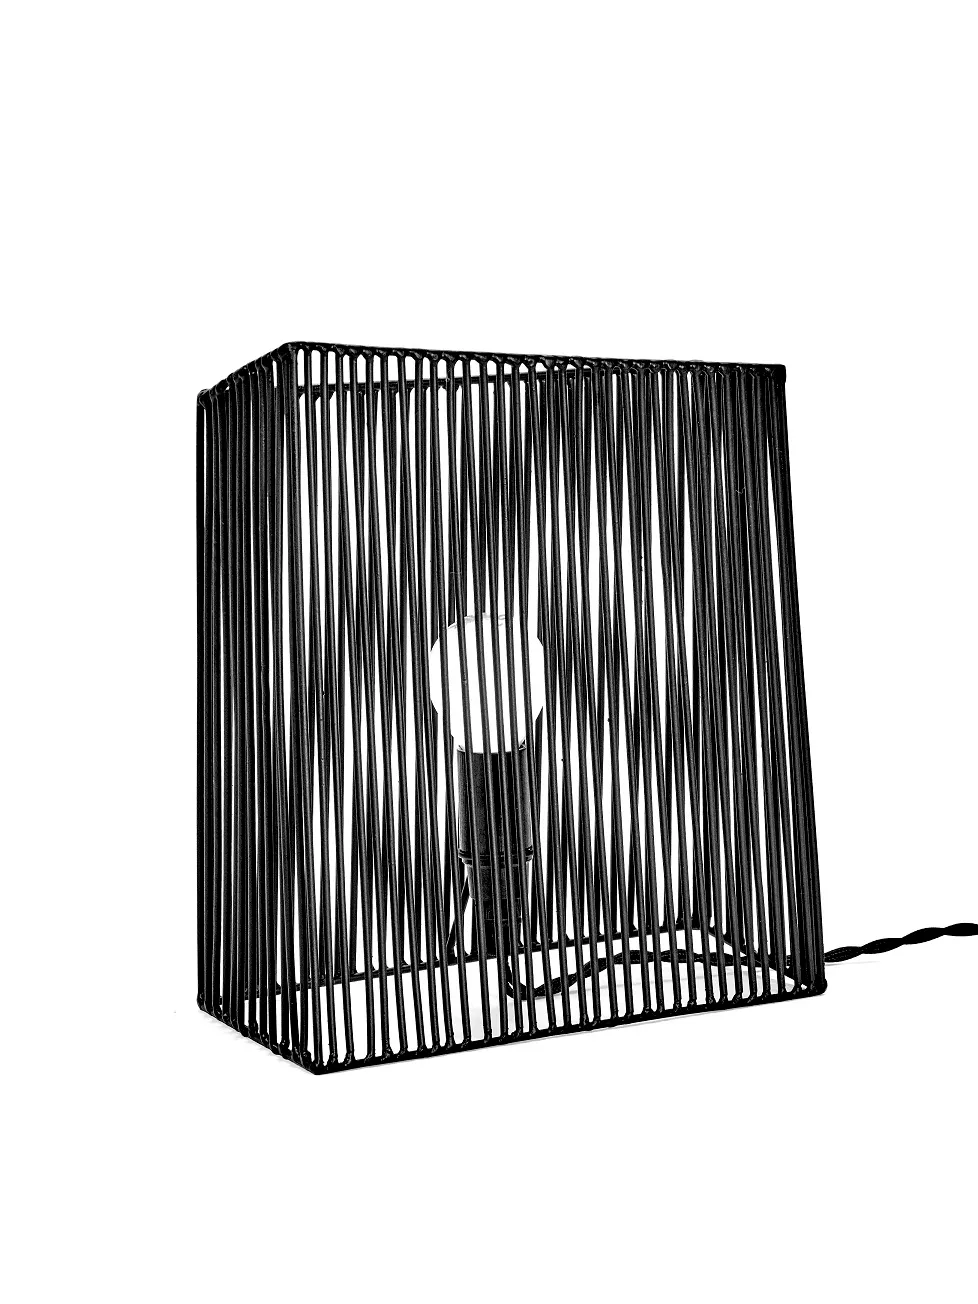 Wall/Table Lamp L Ombre Black L 23.5 W 21 H 26CM by Antonino Sciortino